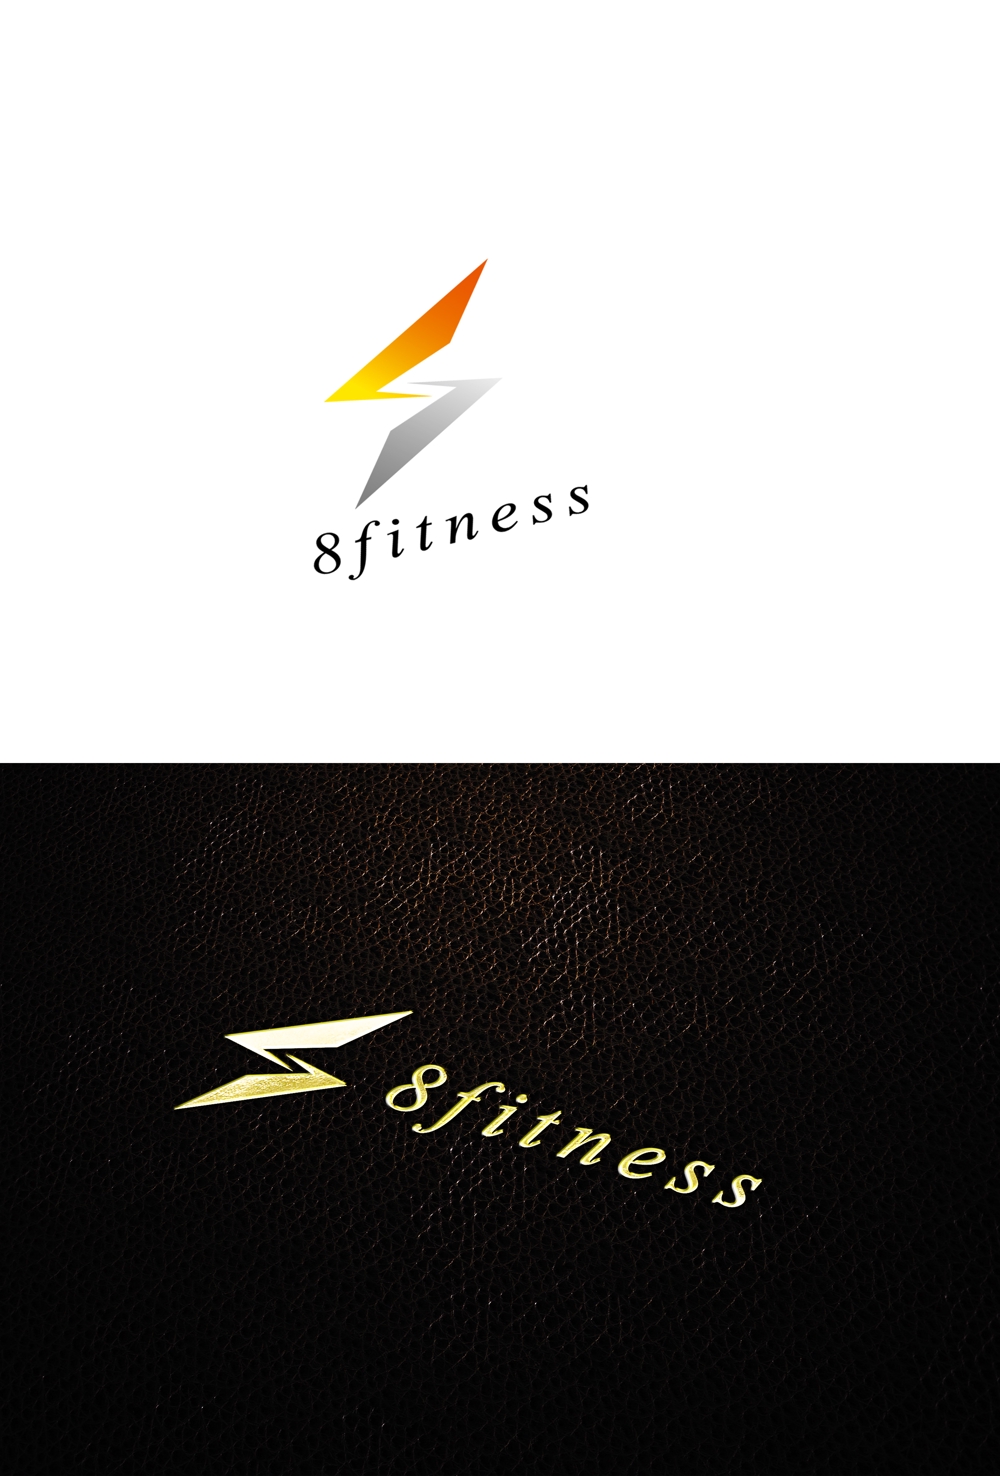 パーソナルトレーニングジム「8fitness」のロゴ